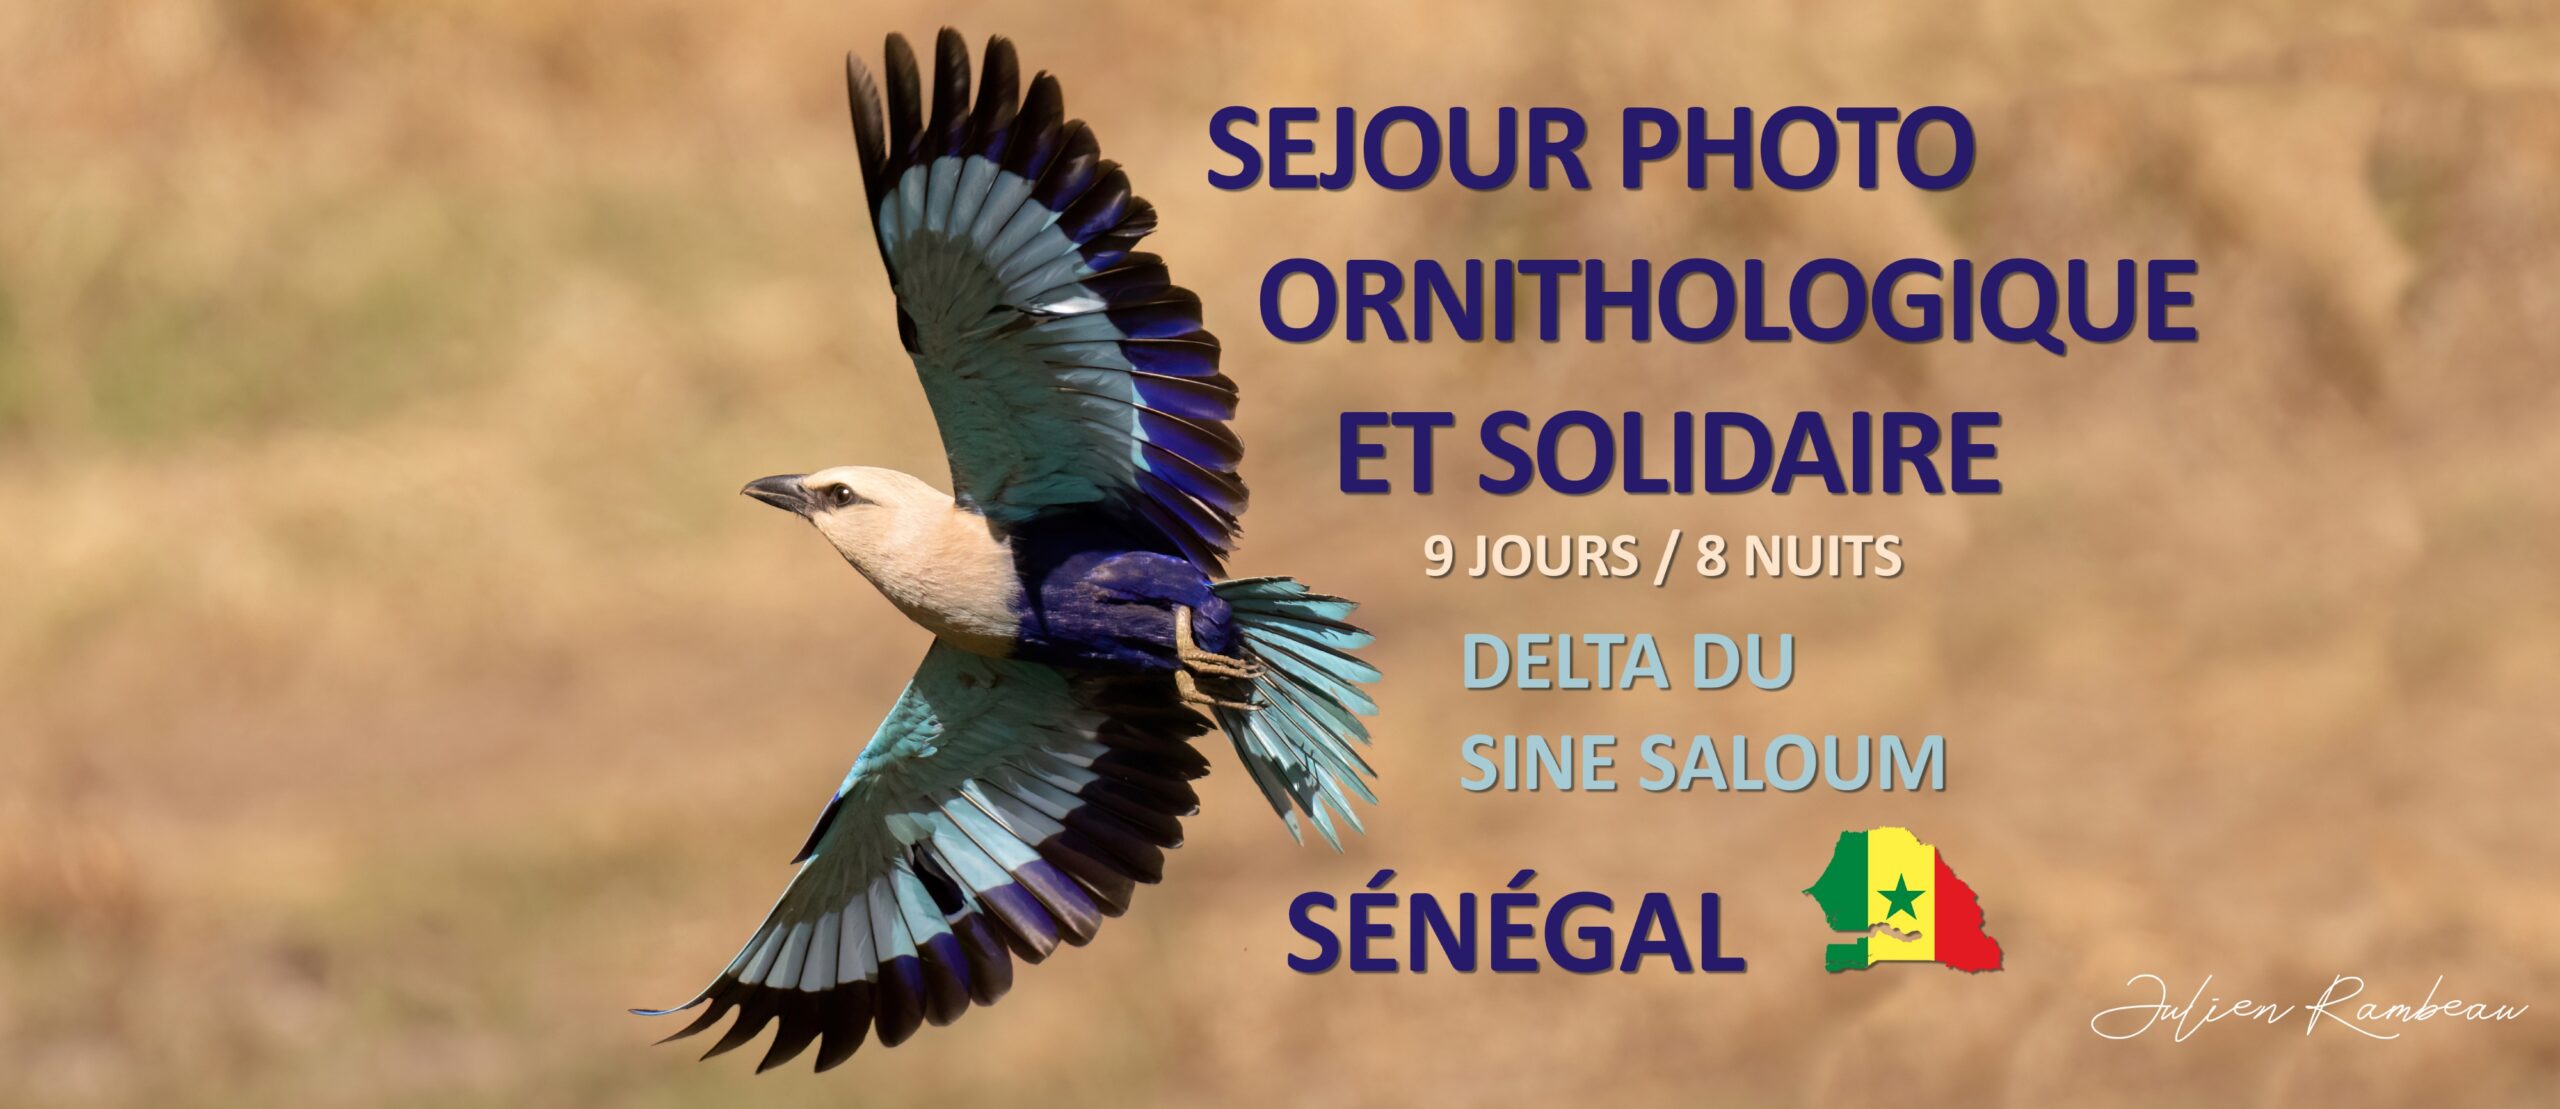 sejour photo ornithologique senegal delta sine saloum